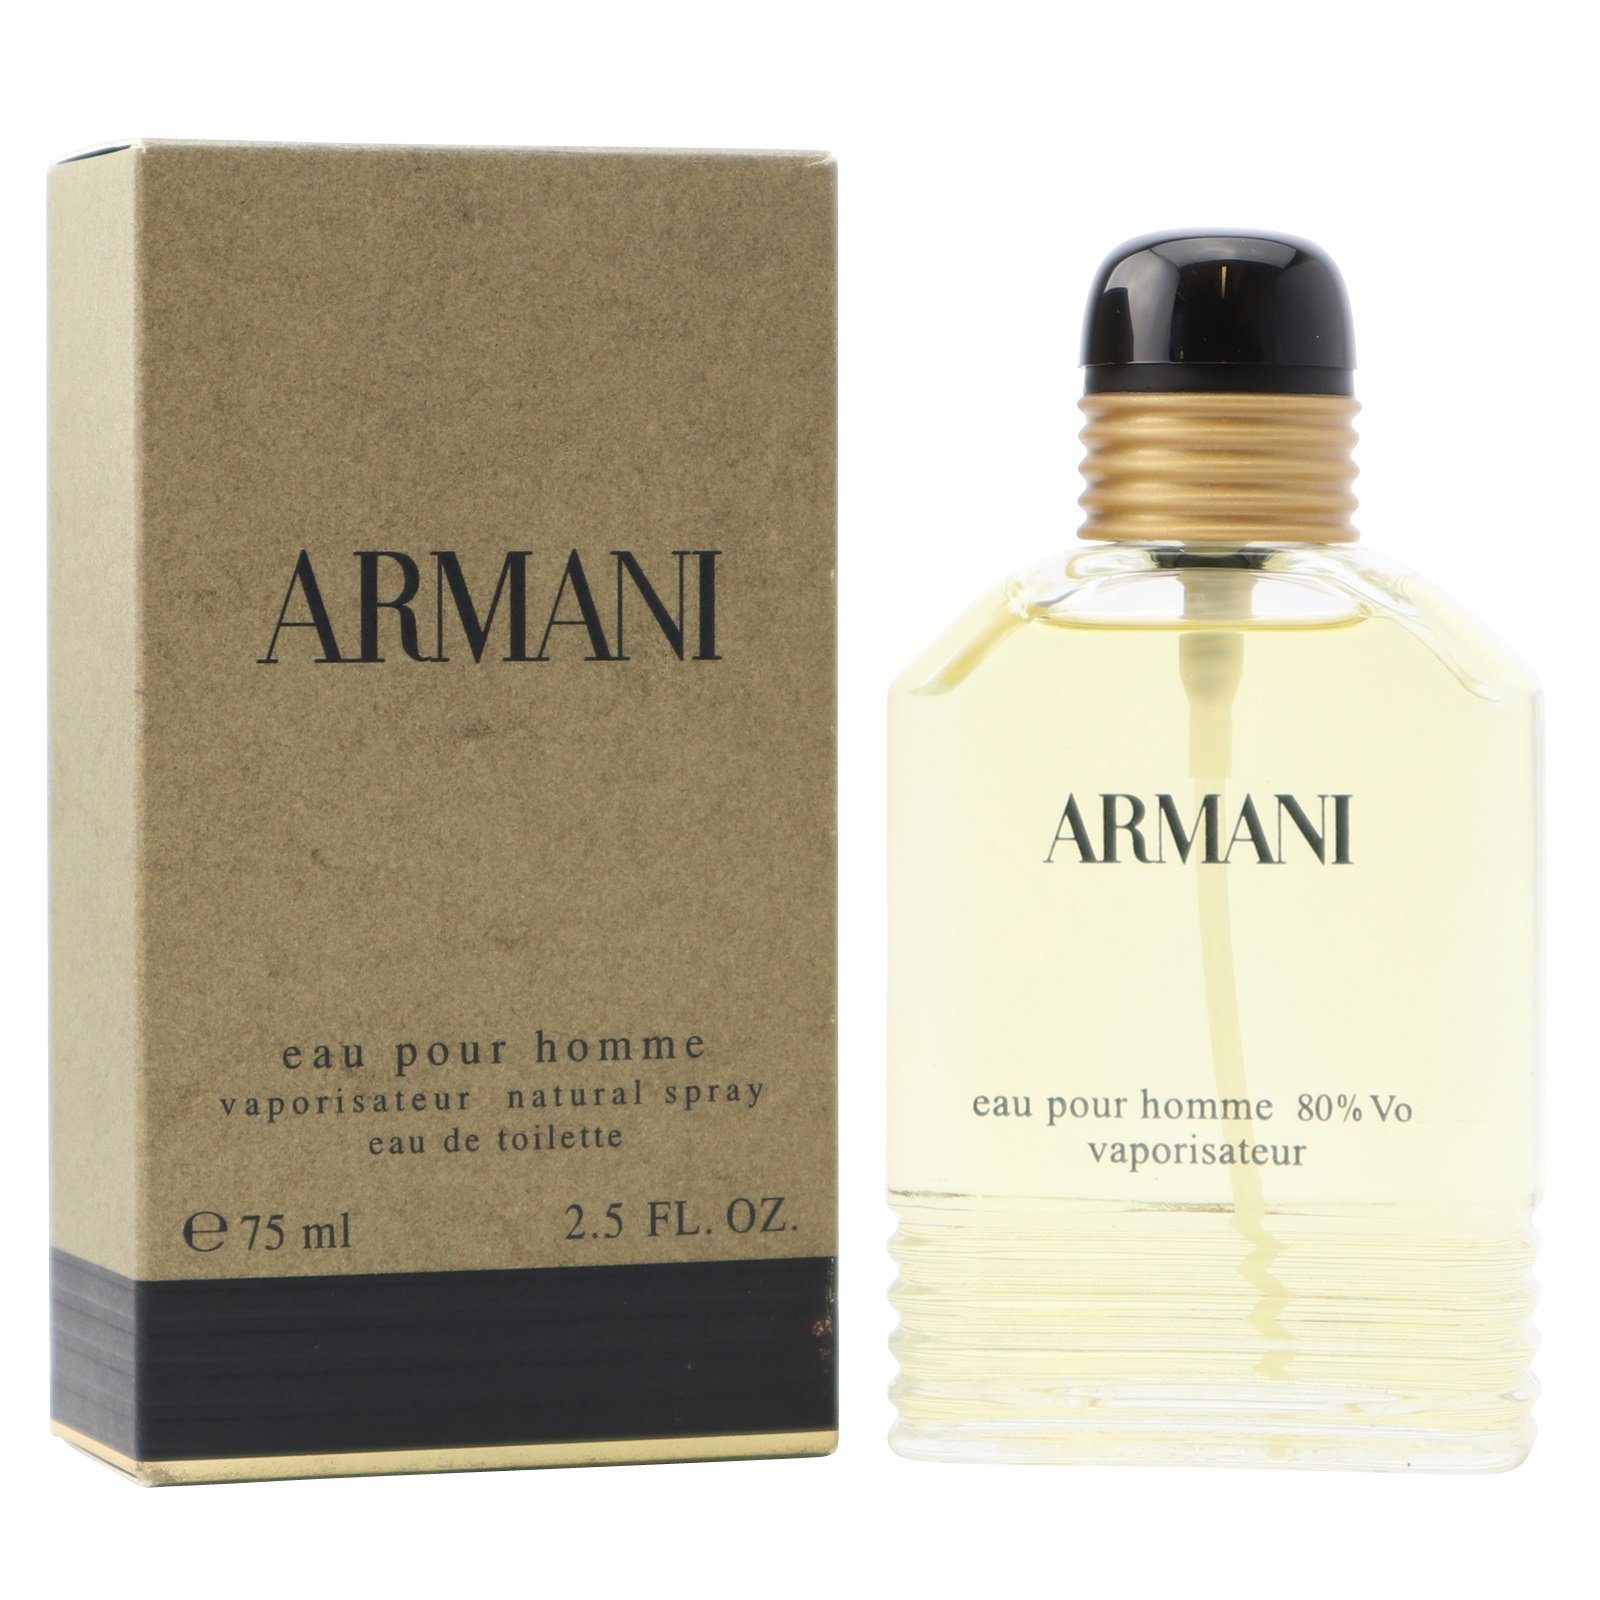 Giorgio Armani Eau de Toilette Armani Eau Pour Homme Eau de Toilette Spray 75 ml